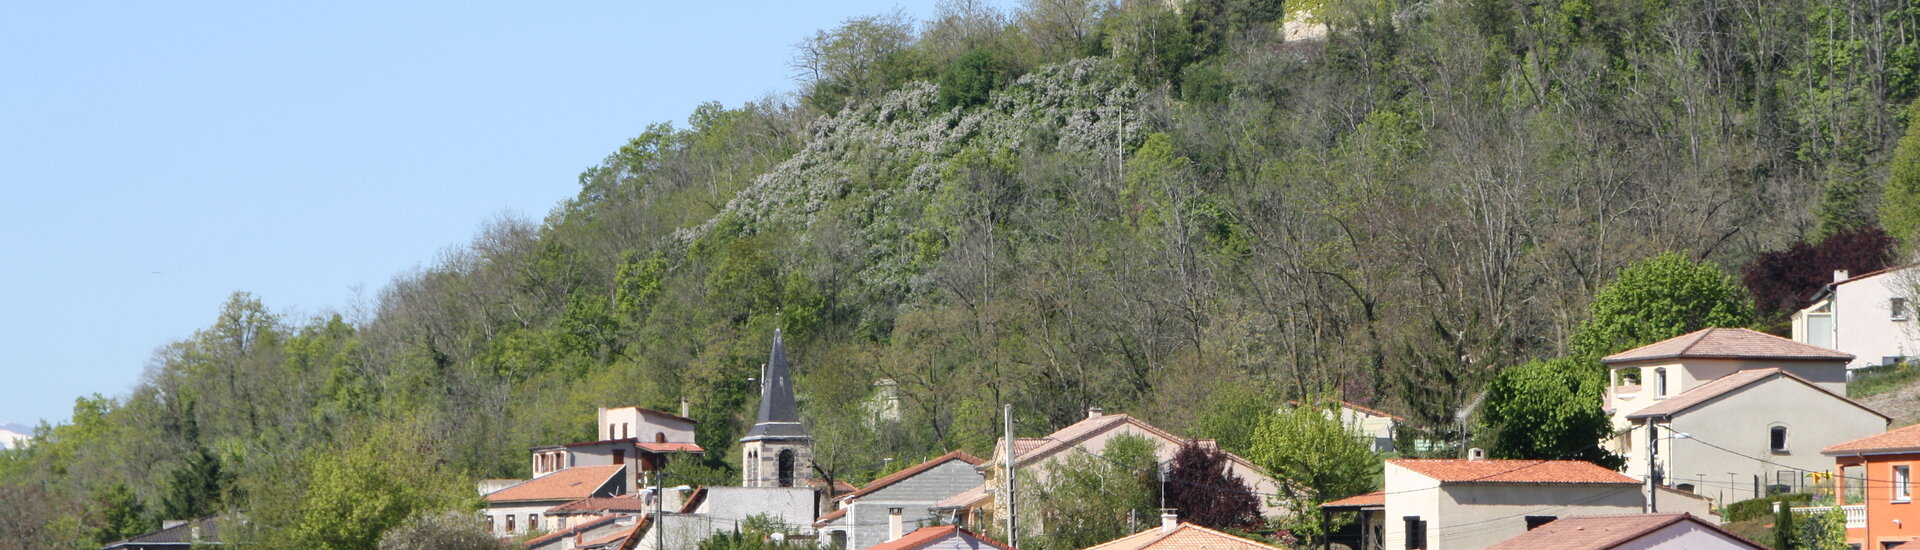 Commune Mairie Saint-Bonnet-lès-Allier Château Puy-de-Dôme Auvergne